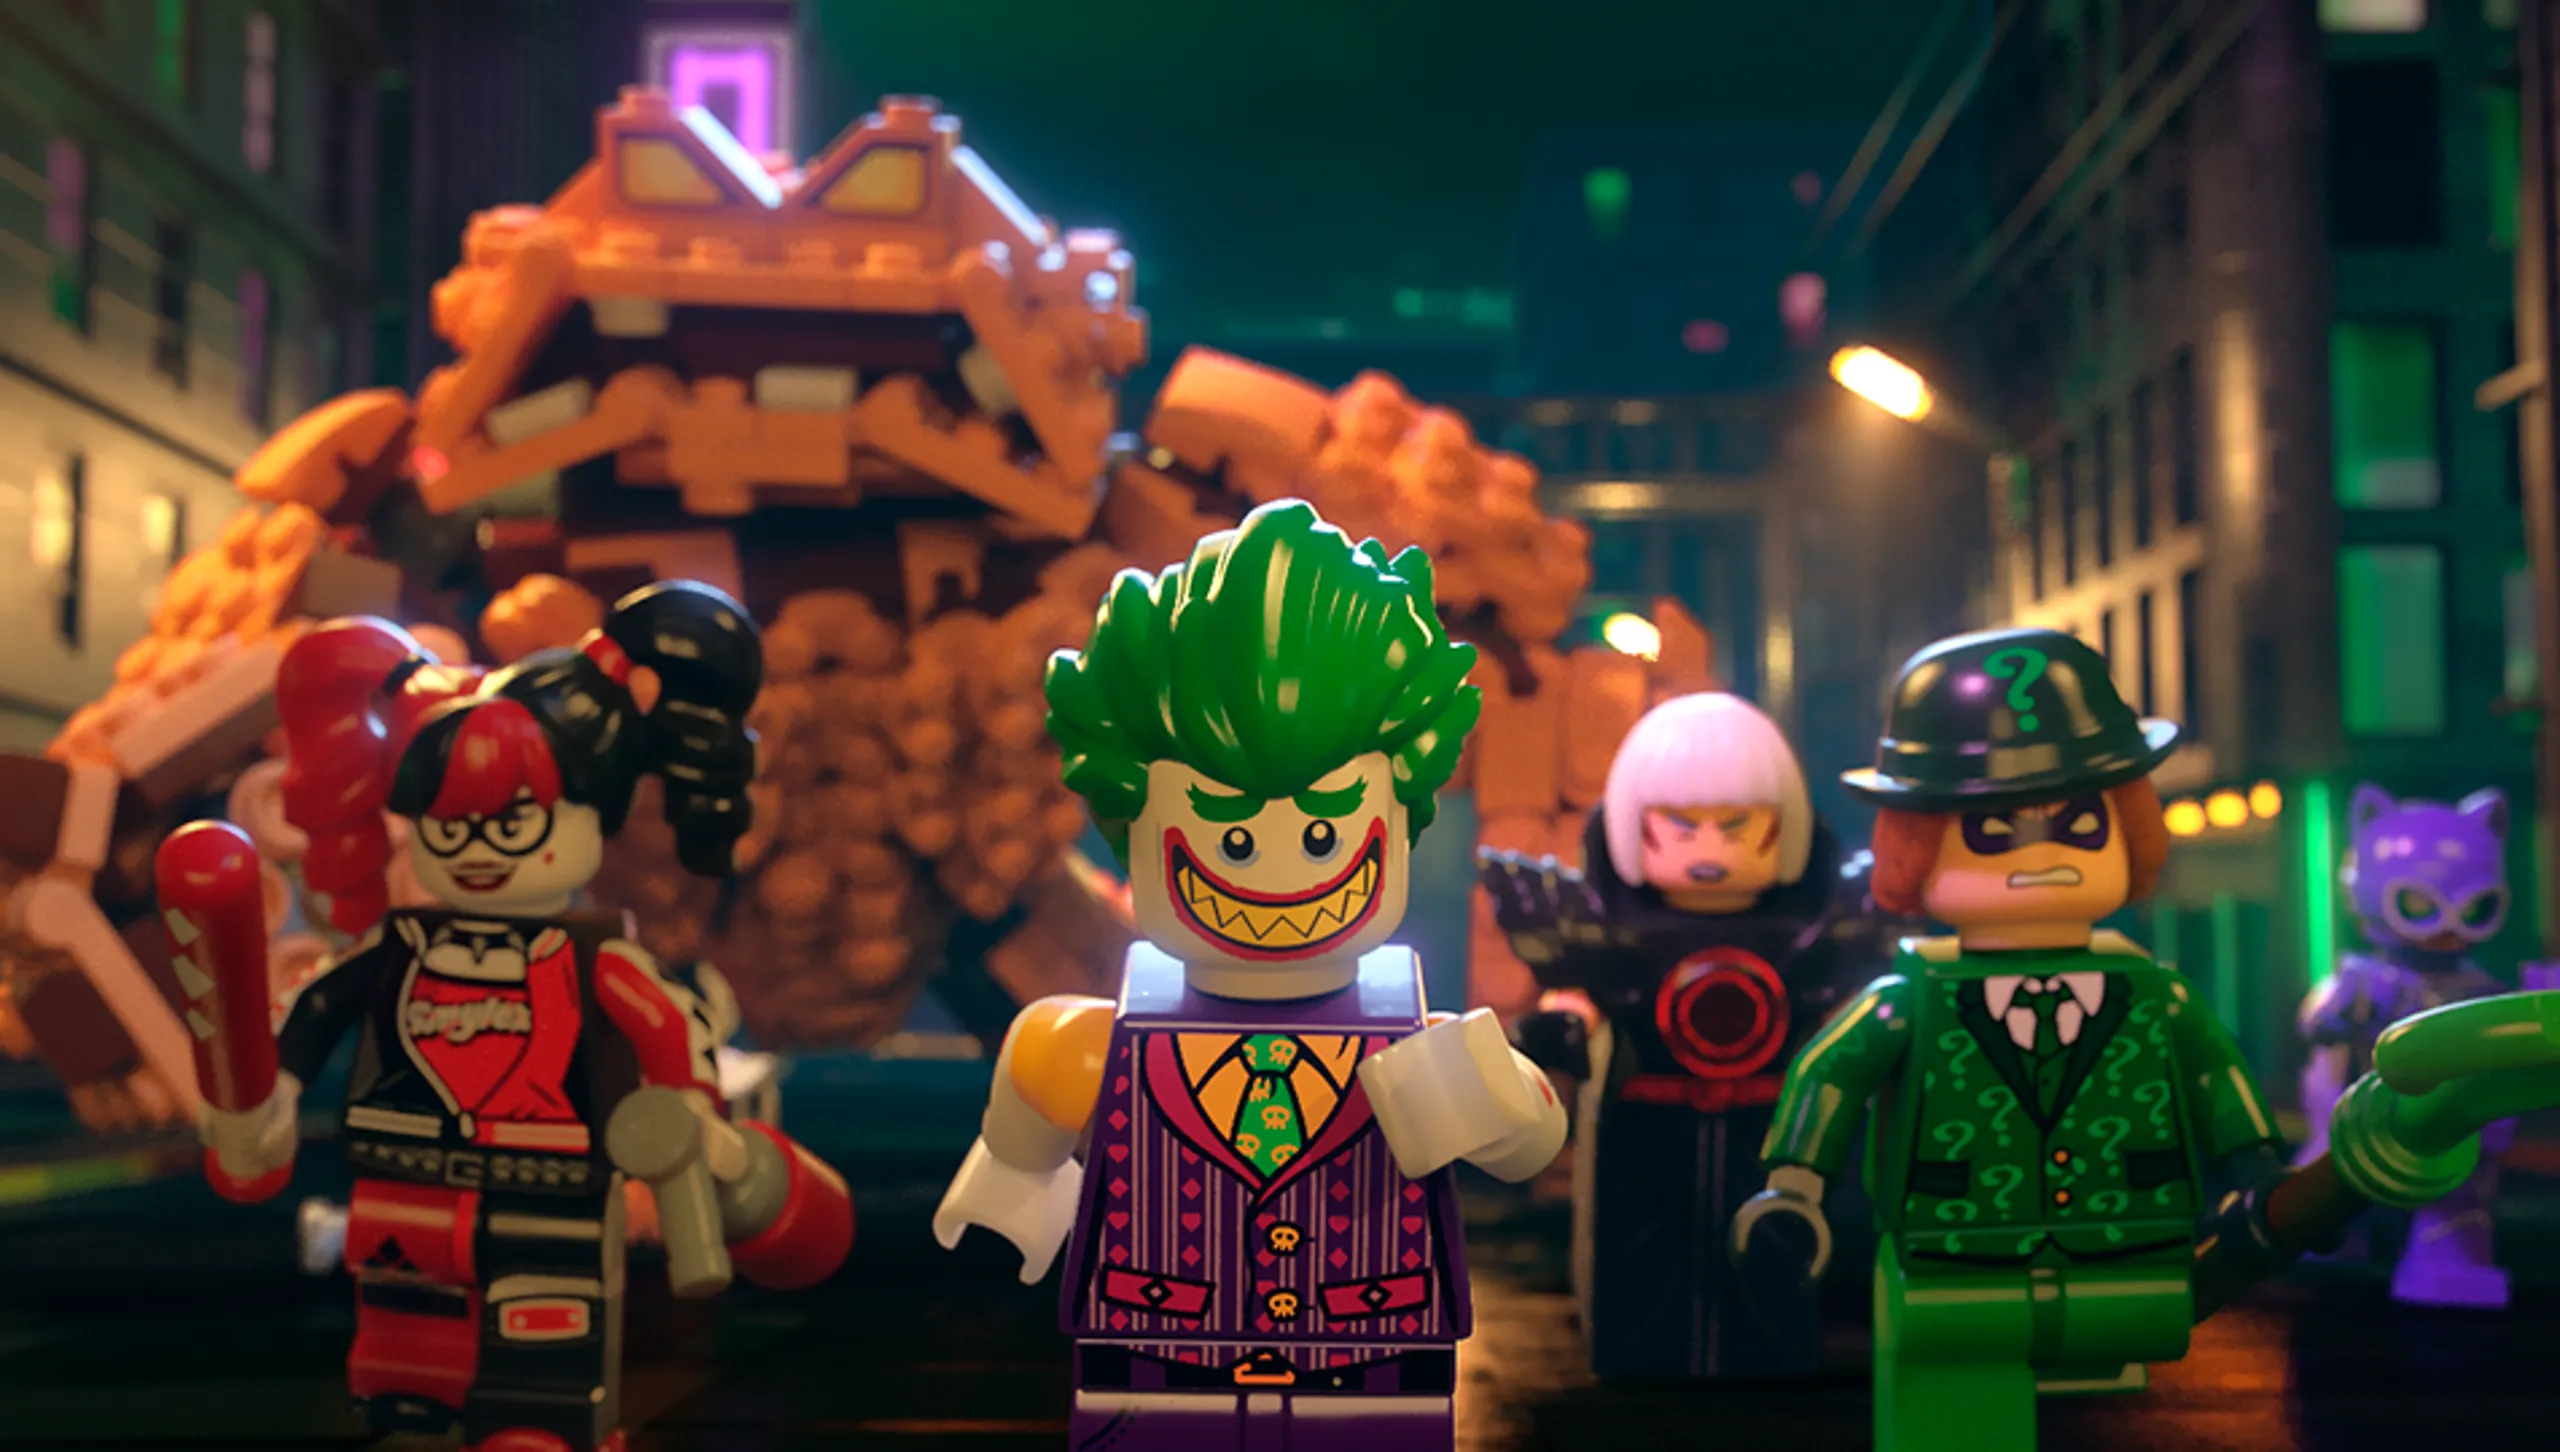 Watch The LEGO Batman Movie